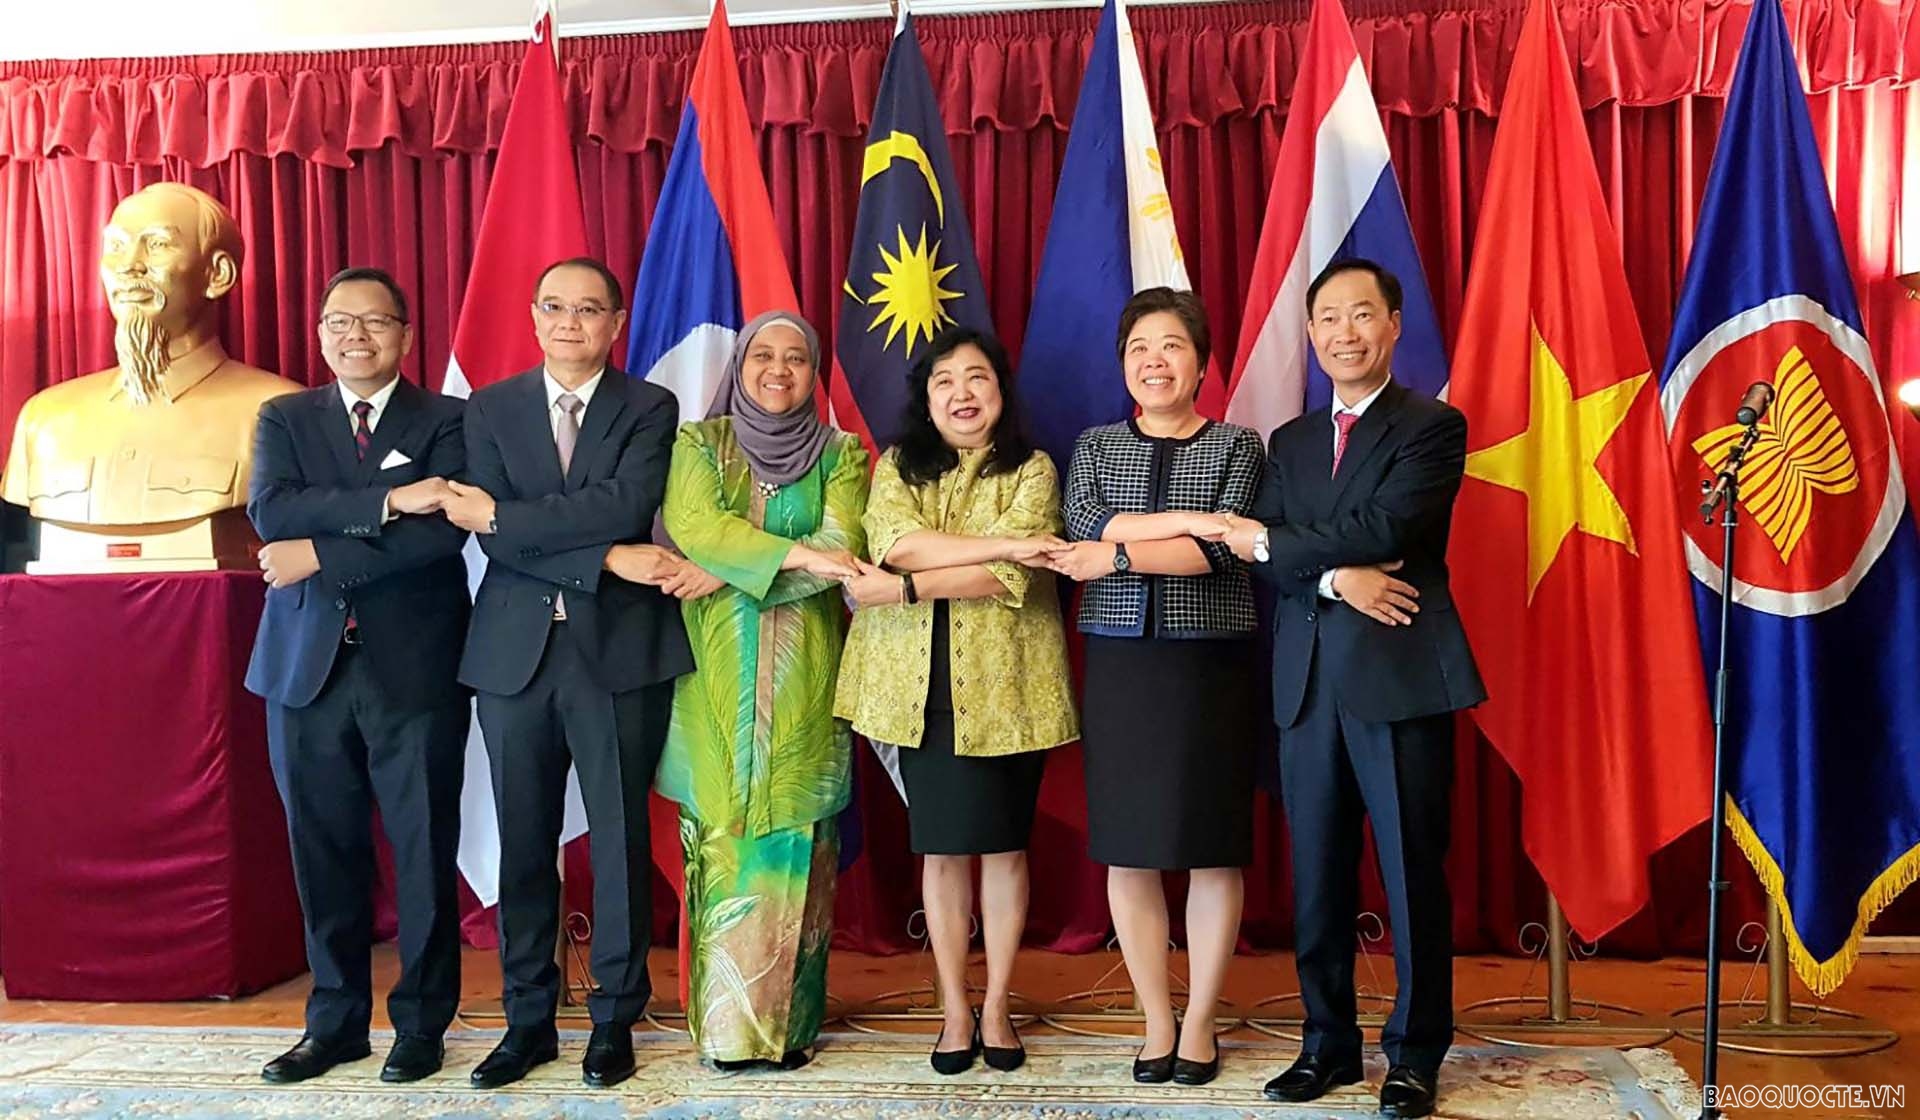 Đại sứ Phan Đăng Đương và Đại sứ các nước Indonesia, Lào, Malaysia, Philippines, Thái Lan tại Thụy Điển.